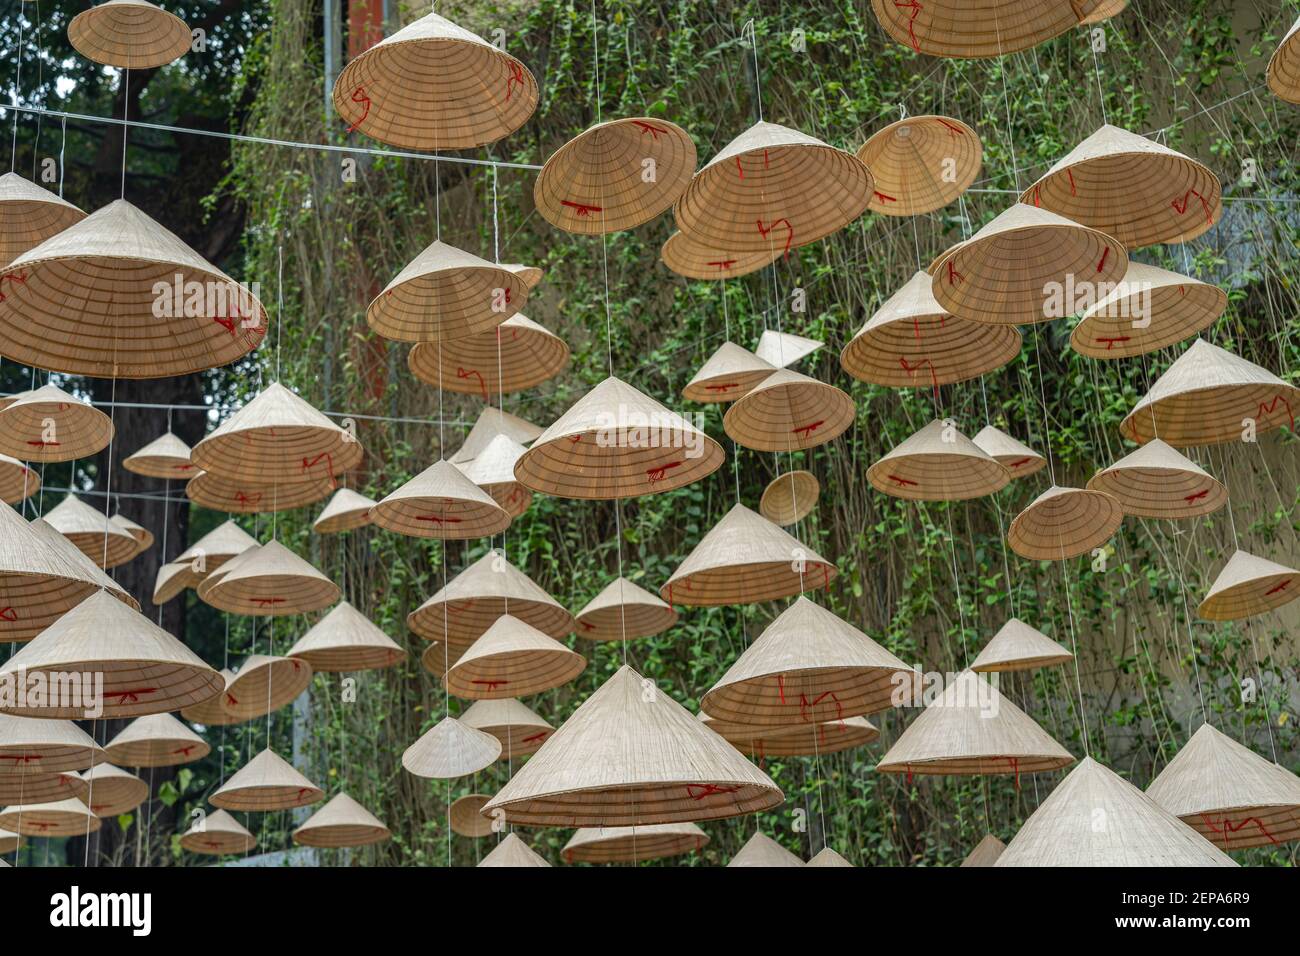 Beaucoup de chapeau conique suspendu pour la décoration de vacances de Tet vietnamienne Banque D'Images